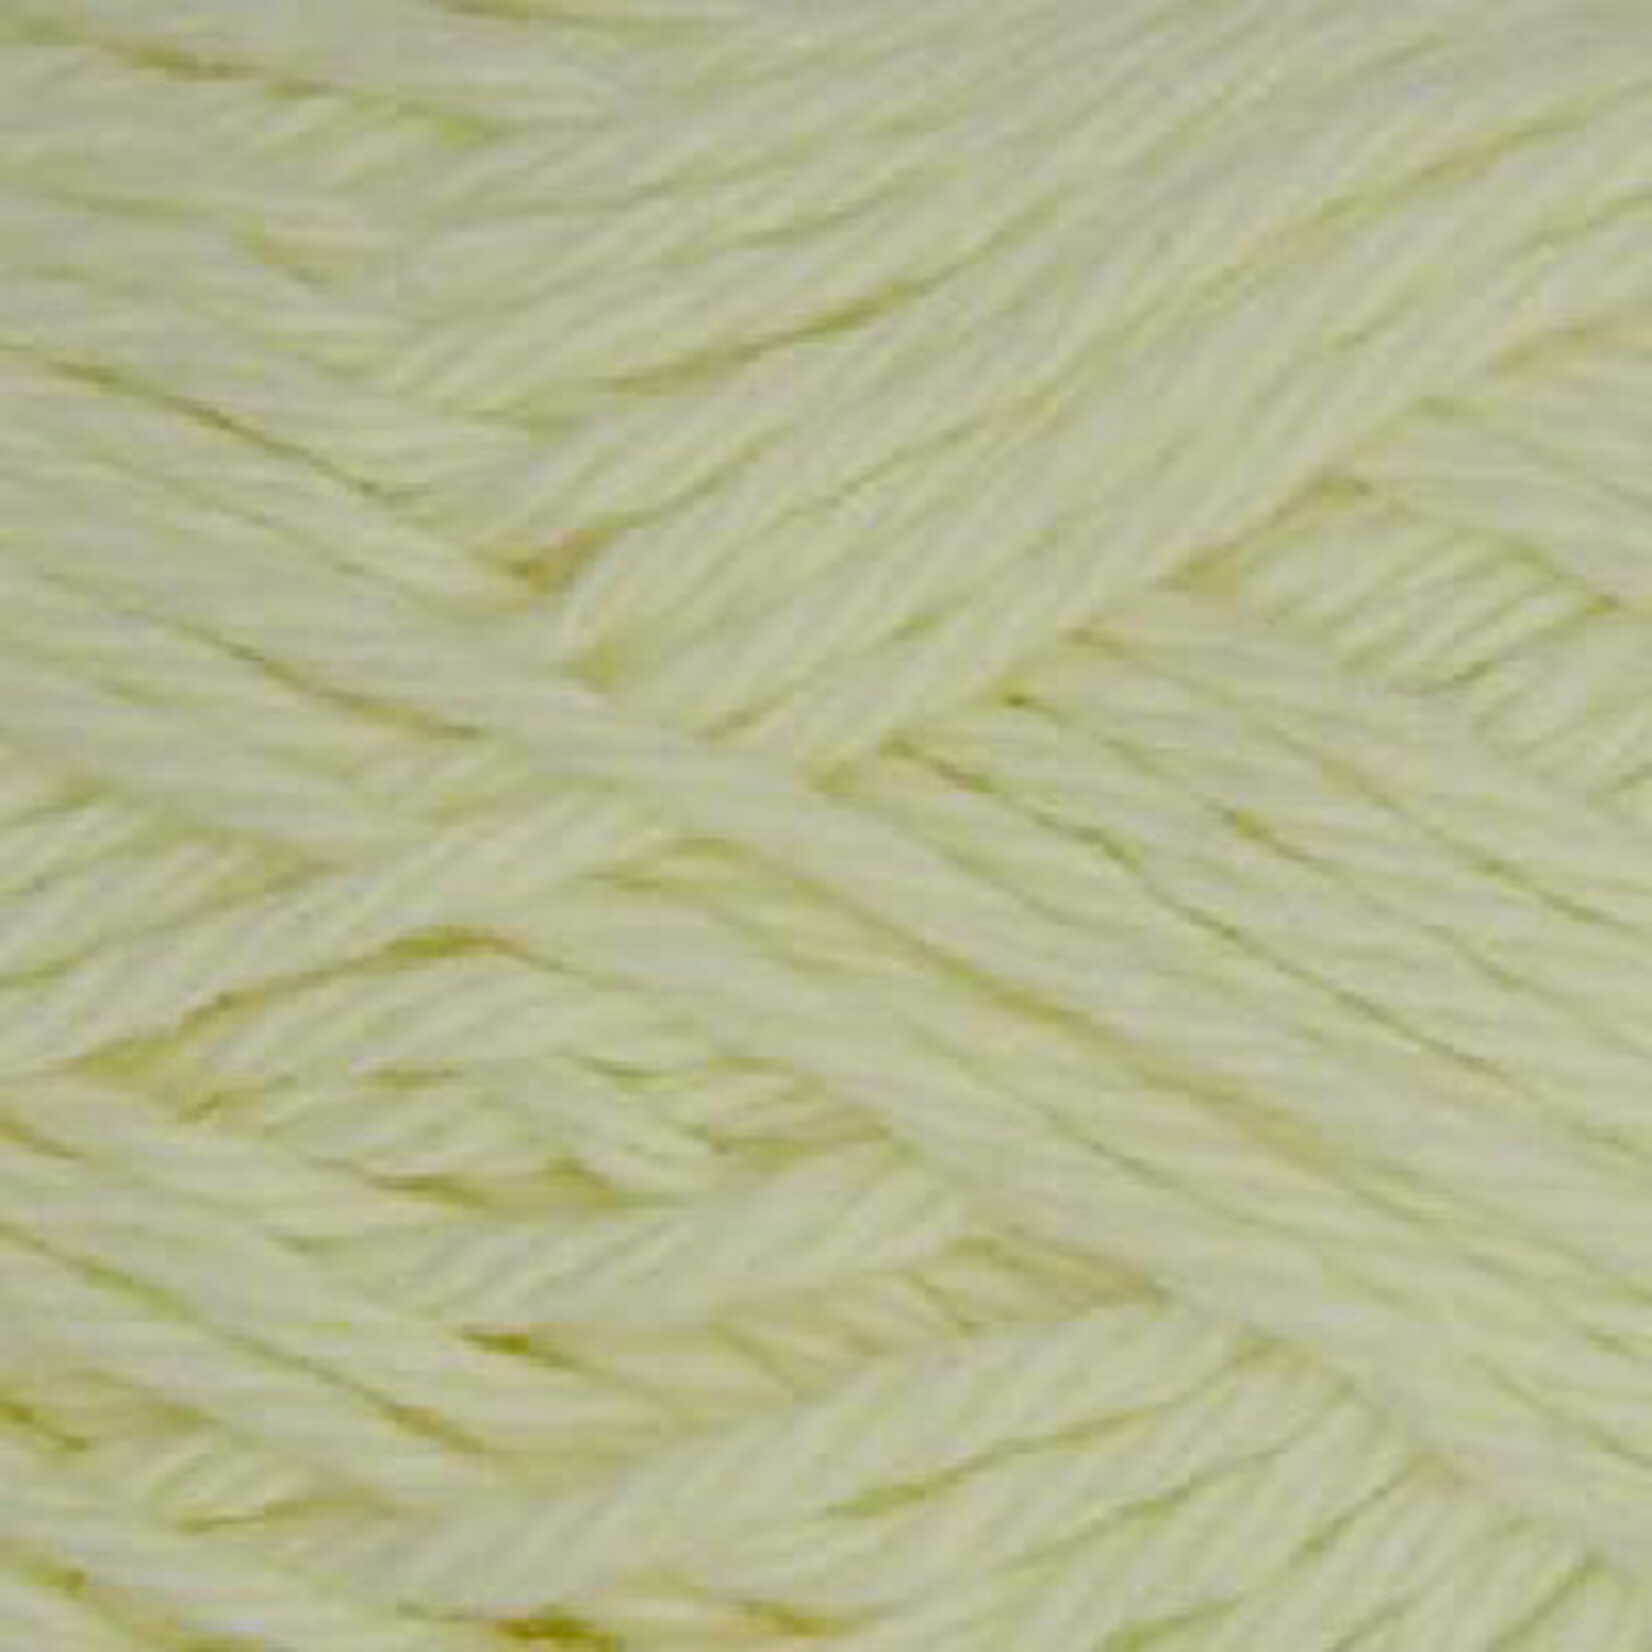 Estelle Sudz Cotton Solids by Estelle Yarns